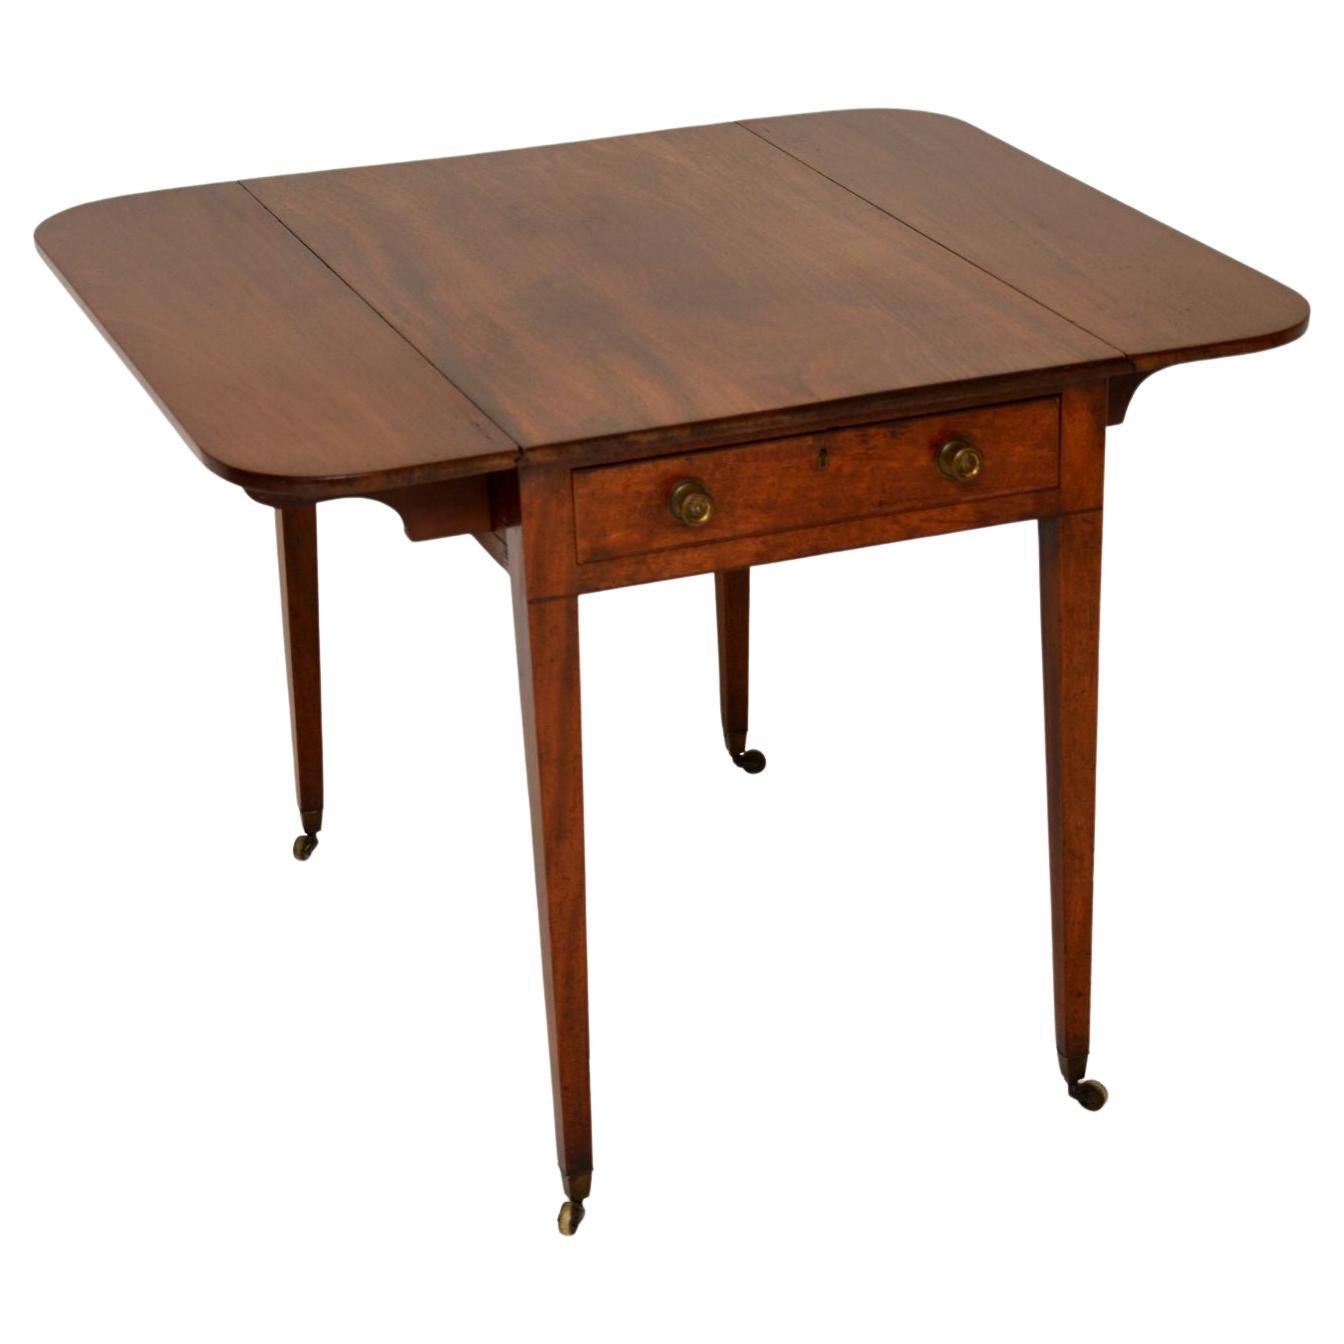 Ein eleganter und sehr gut gefertigter Pembroke-Tisch aus der georgianischen Zeit. Sie wurde in England hergestellt und stammt aus der Zeit zwischen 1790 und 1810.

Die Qualität ist hervorragend und hat im Laufe der Jahre eine herrliche Patina